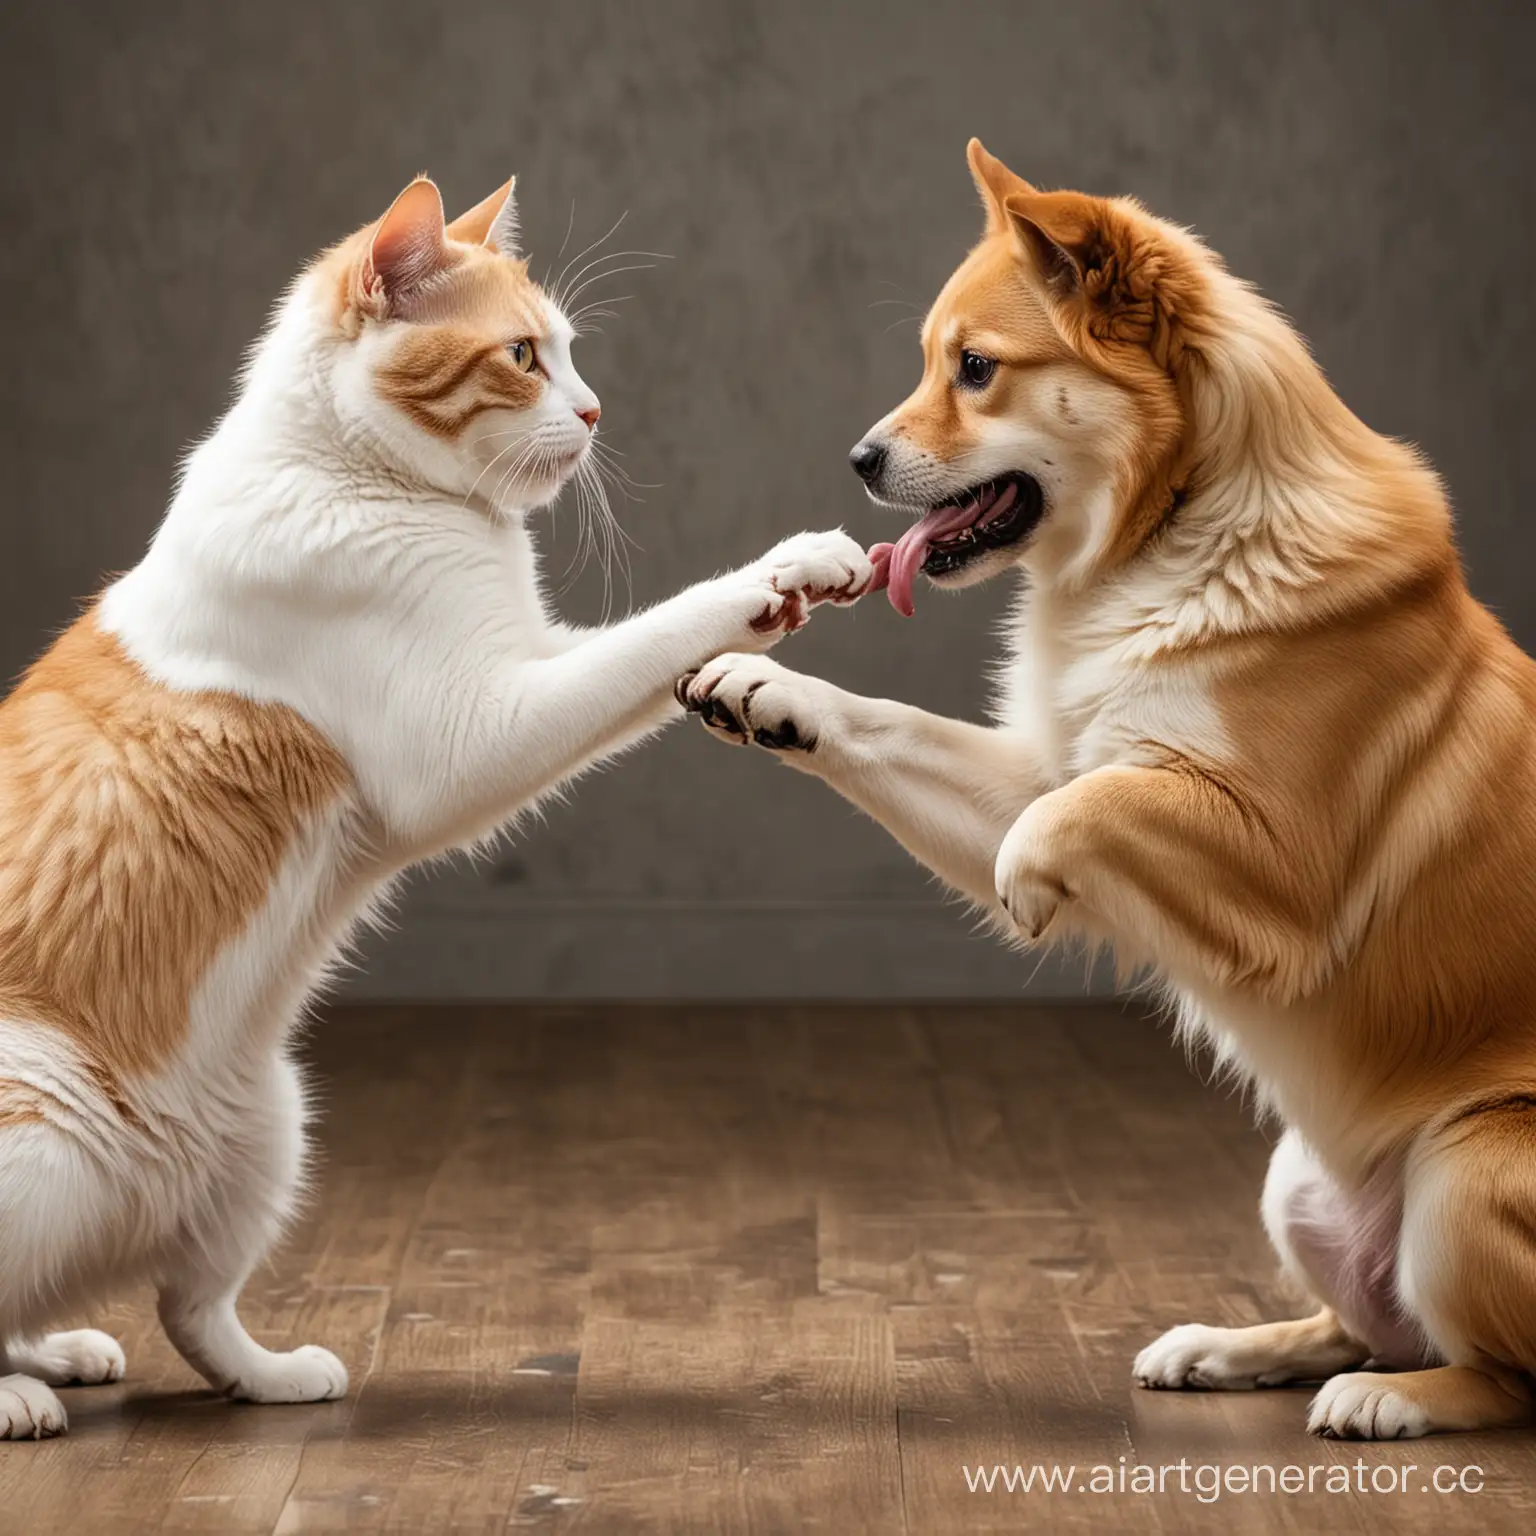 Intense-Battle-Between-Cat-and-Dog